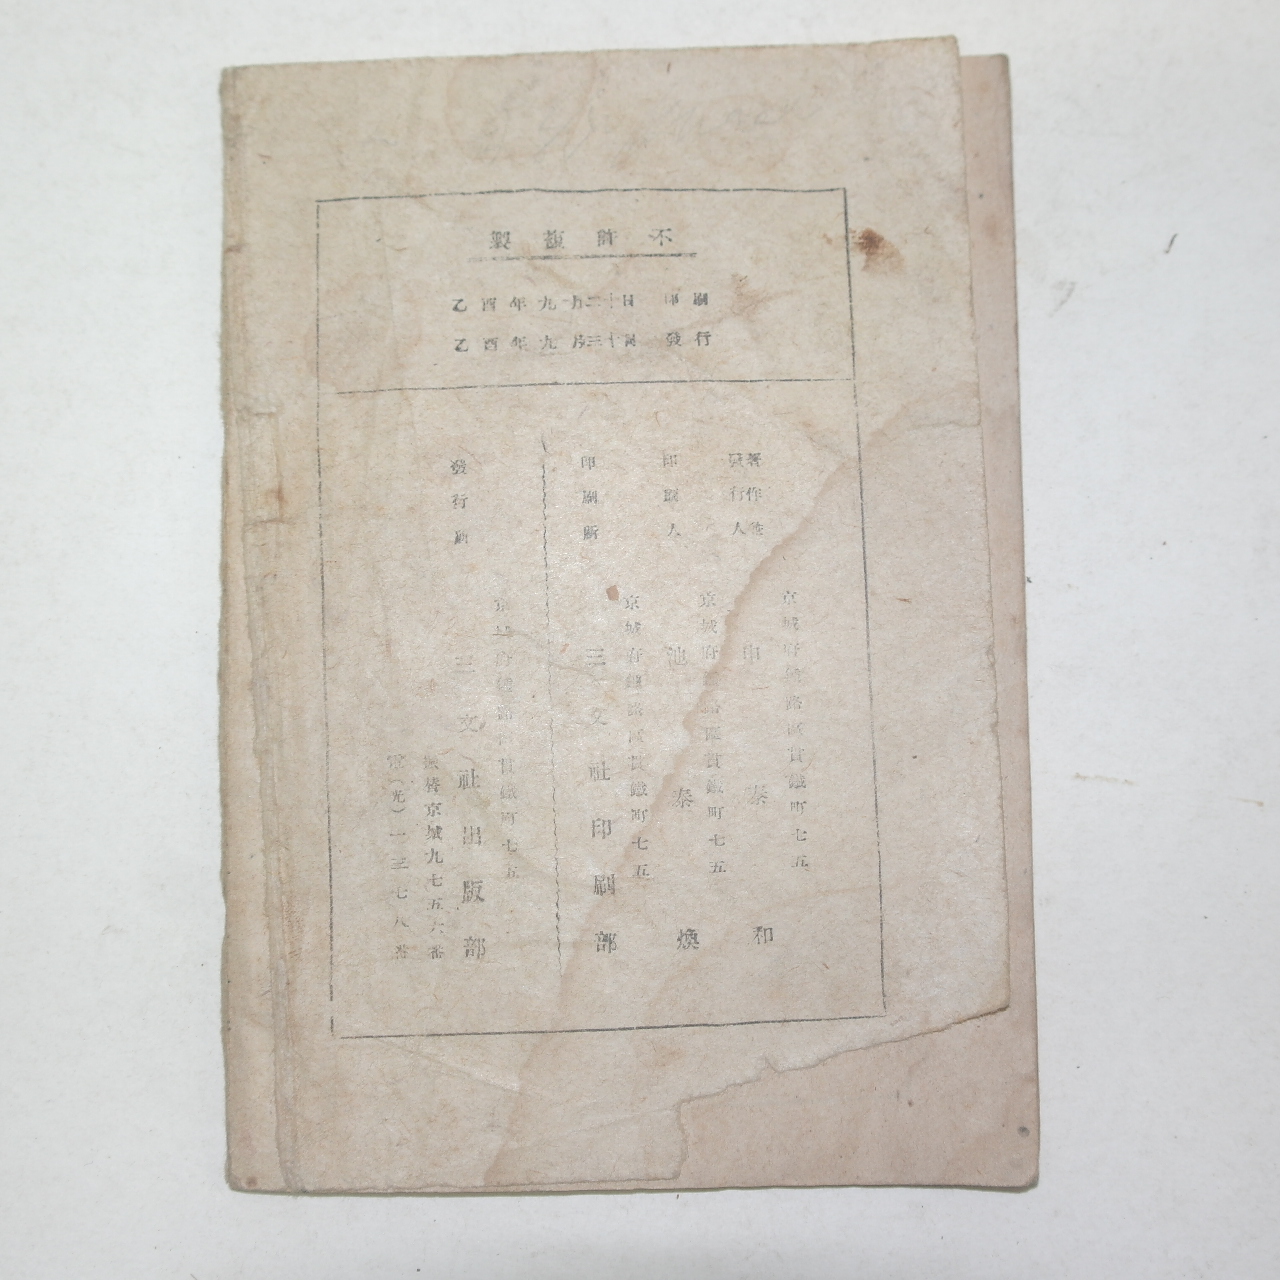 1934년 경성삼문사발행 한글 국어철자법(國語綴字法)